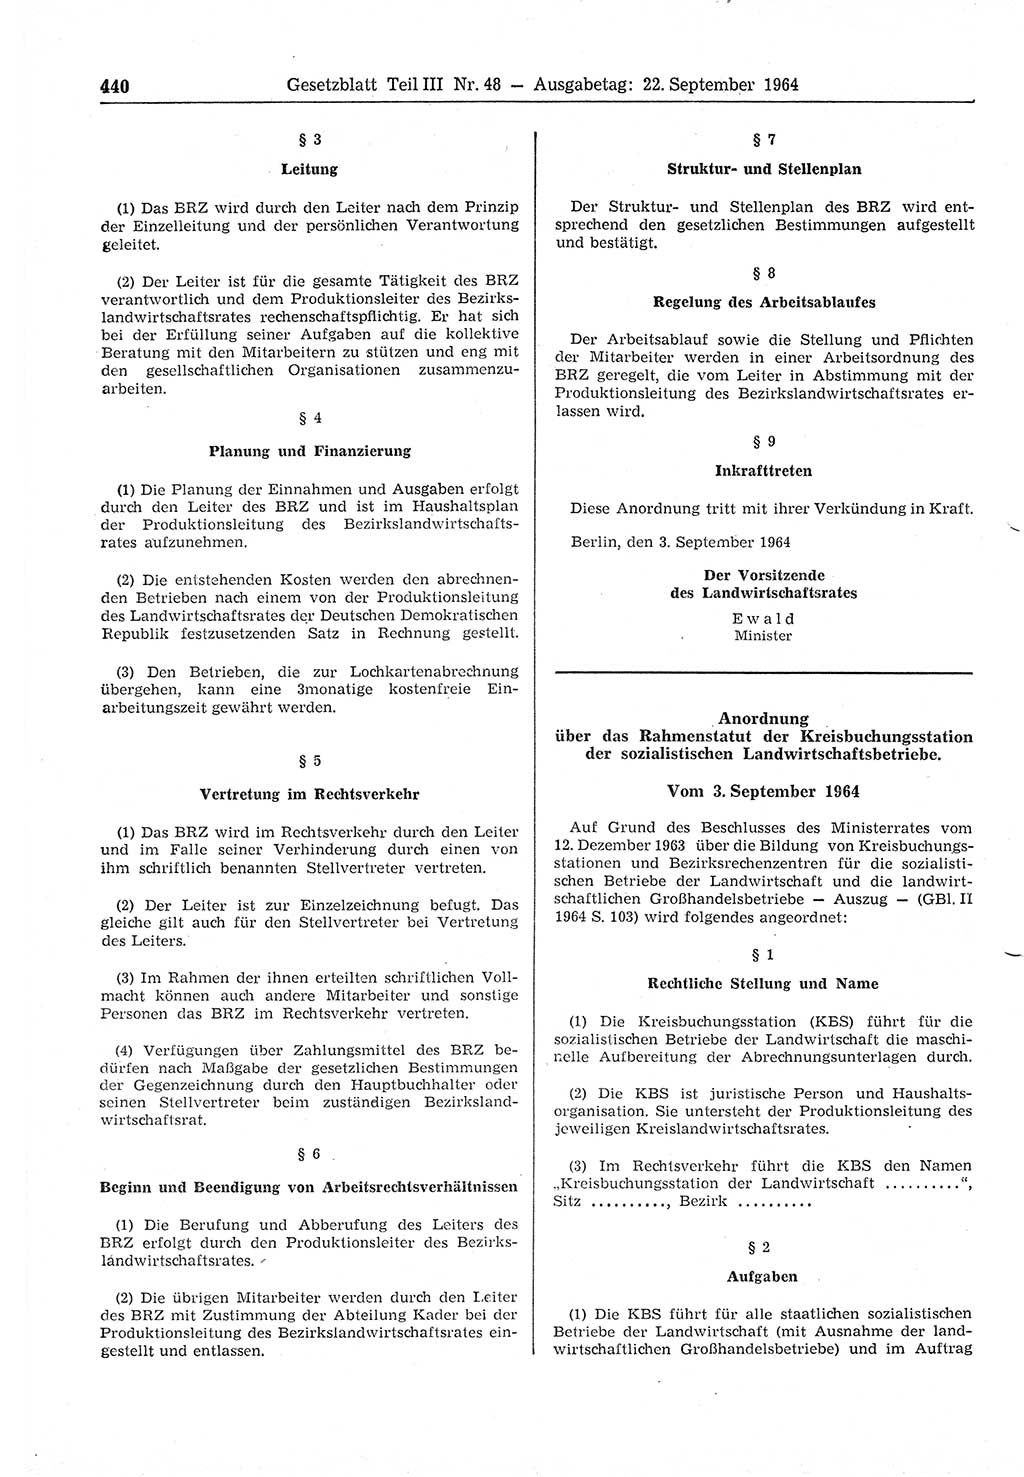 Gesetzblatt (GBl.) der Deutschen Demokratischen Republik (DDR) Teil ⅠⅠⅠ 1964, Seite 440 (GBl. DDR ⅠⅠⅠ 1964, S. 440)